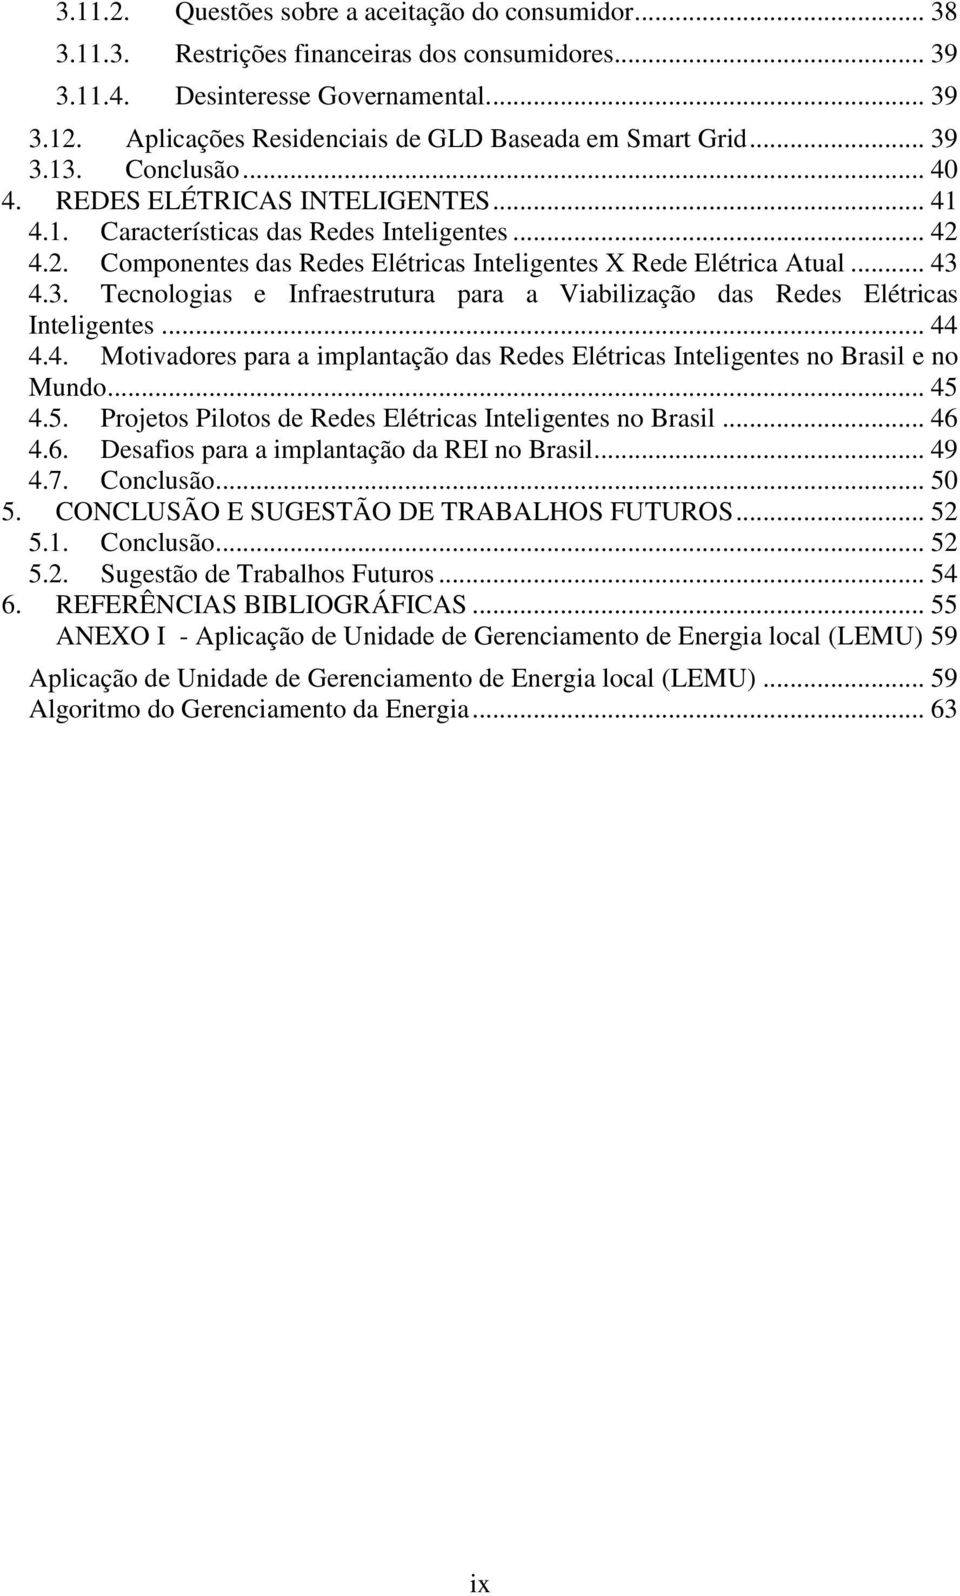 4.2. Componentes das Redes Elétricas Inteligentes X Rede Elétrica Atual... 43 4.3. Tecnologias e Infraestrutura para a Viabilização das Redes Elétricas Inteligentes... 44 4.4. Motivadores para a implantação das Redes Elétricas Inteligentes no Brasil e no Mundo.